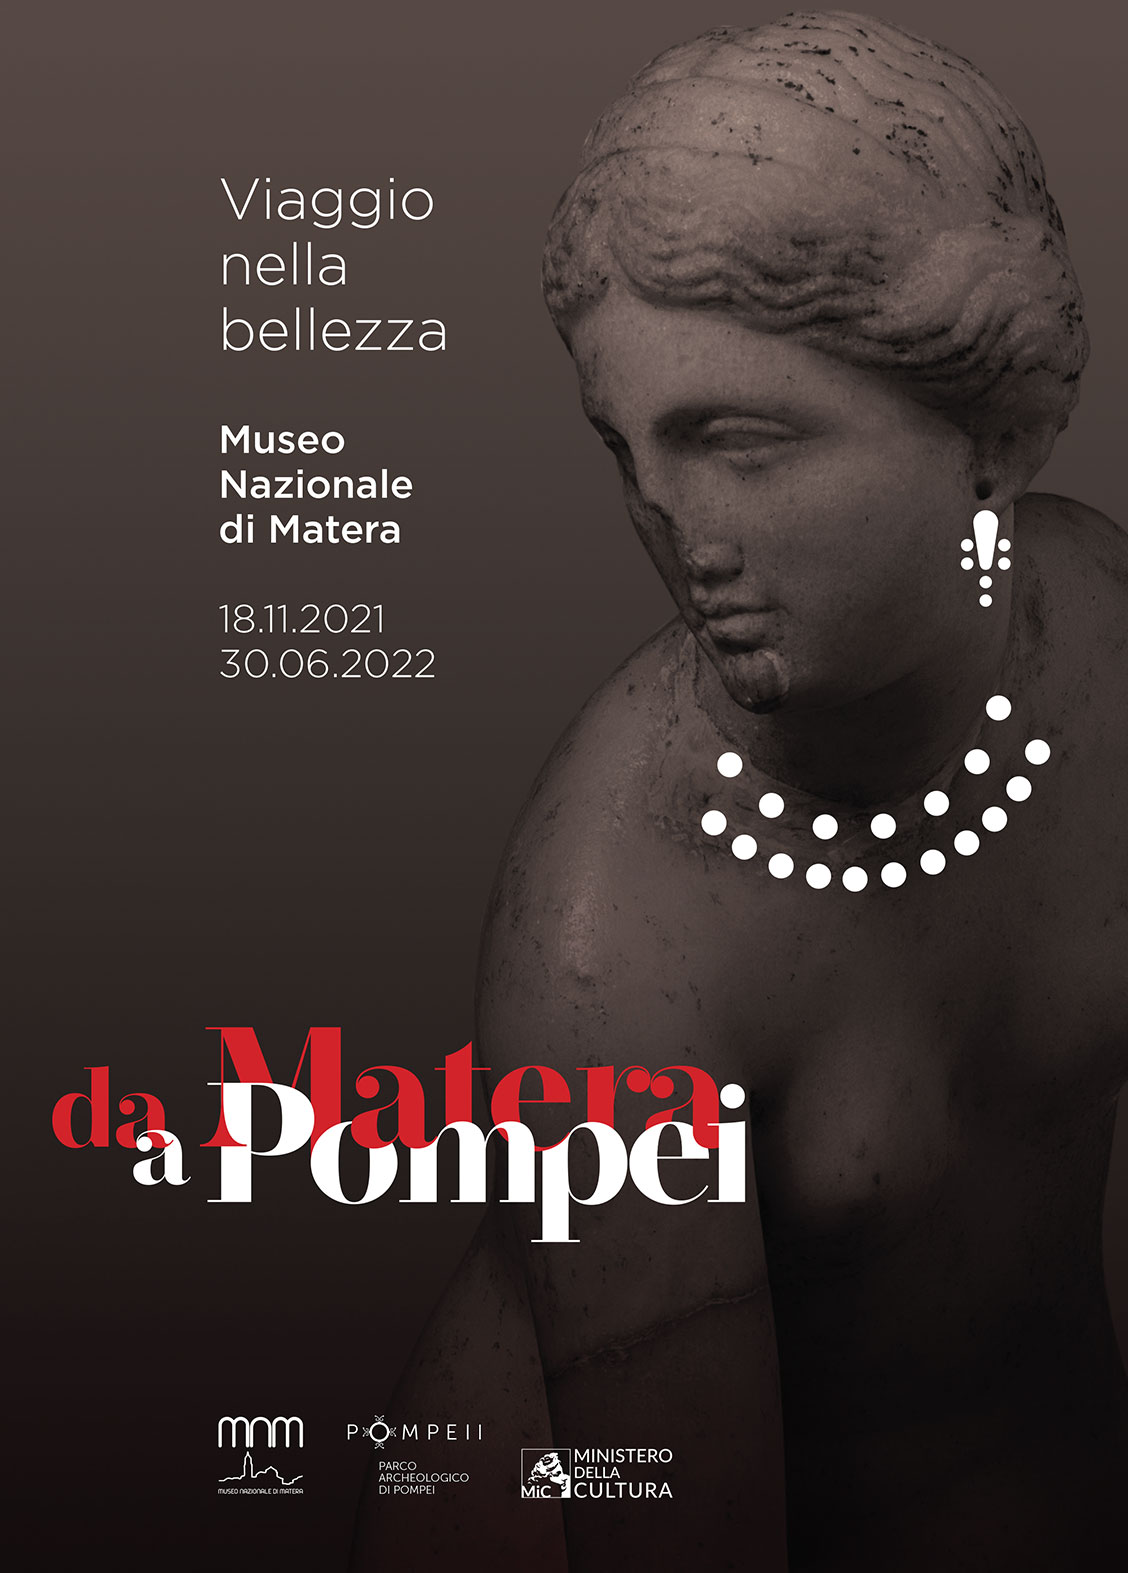 Locandina della mostra “Da Matera a Pompei. Viaggio nella bellezza” allestita presso il Museo Archeologico Domenico Ridola